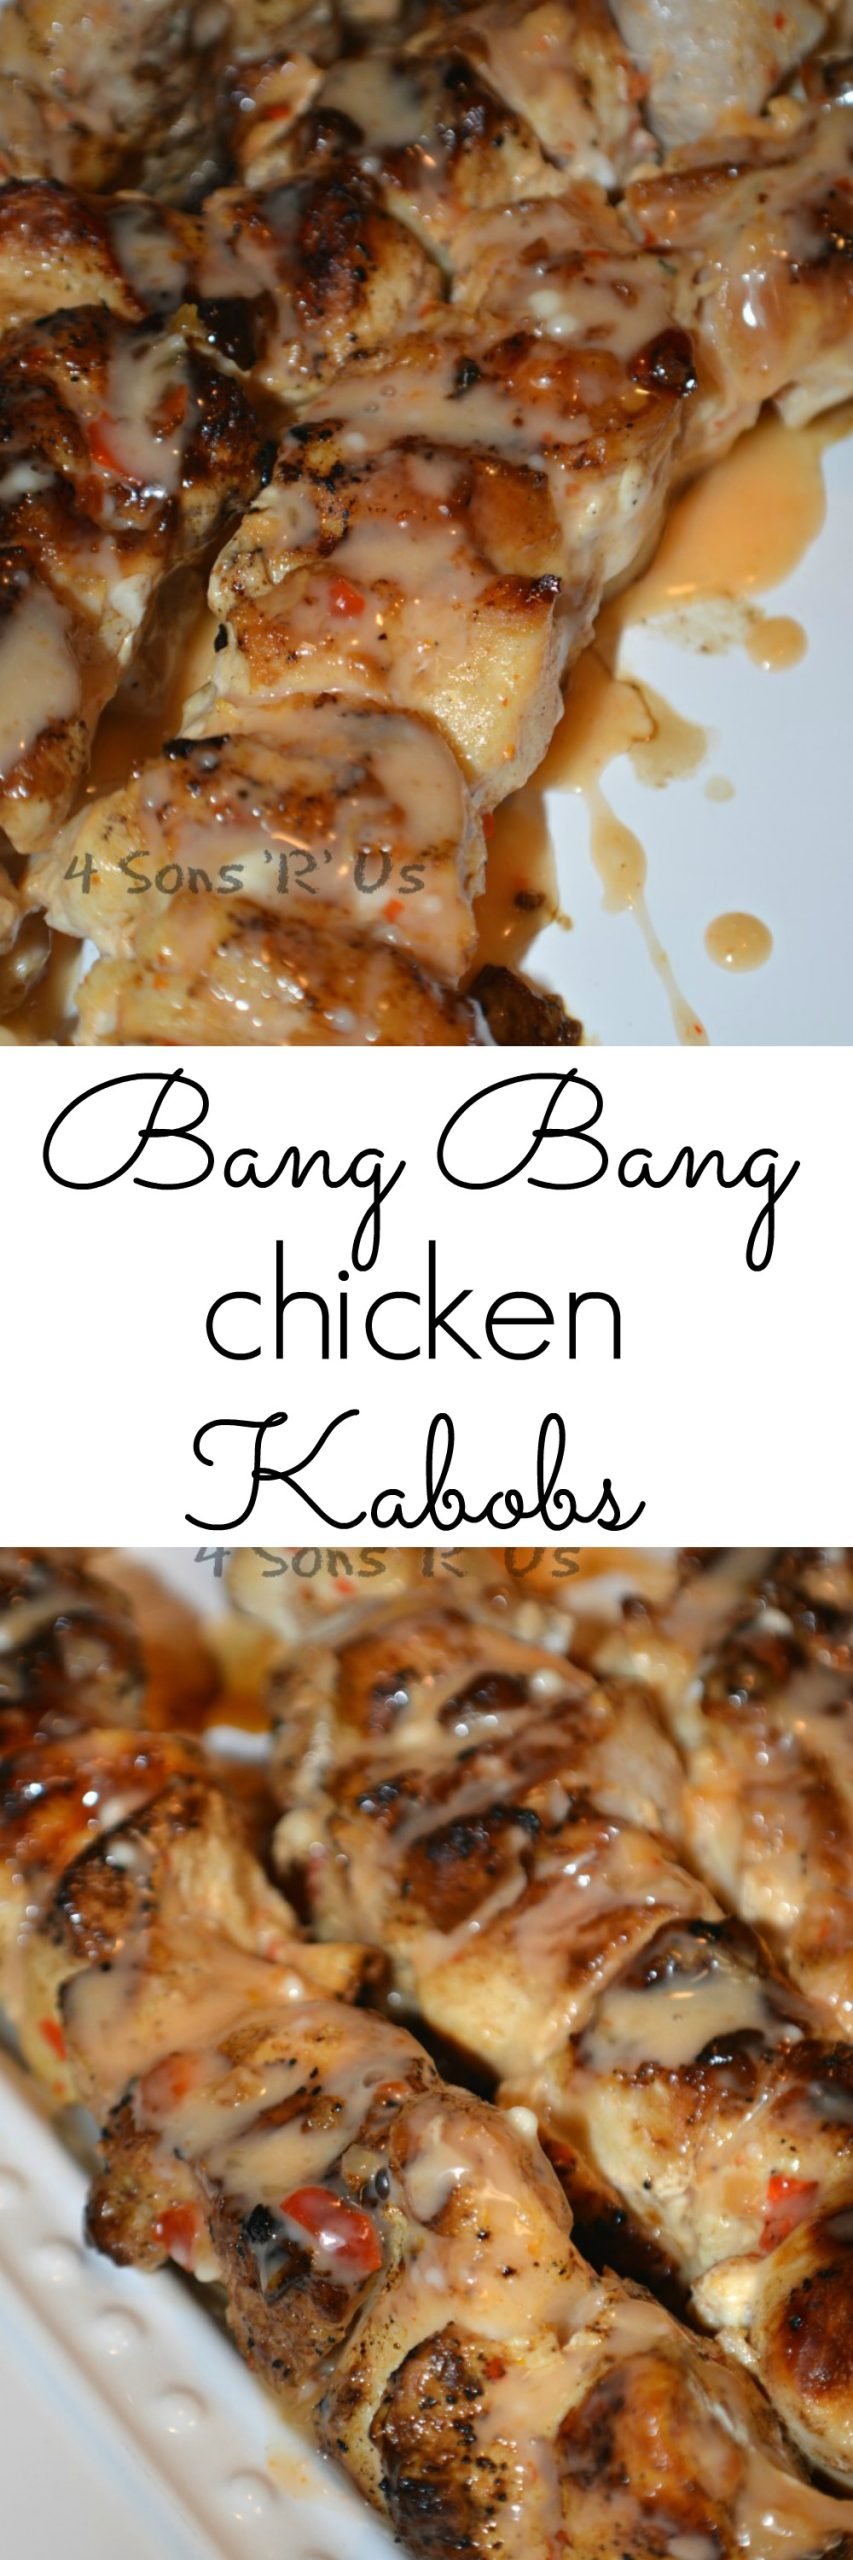 Bang Bang Chicken Kabobs - 4 Sons 'R' Us